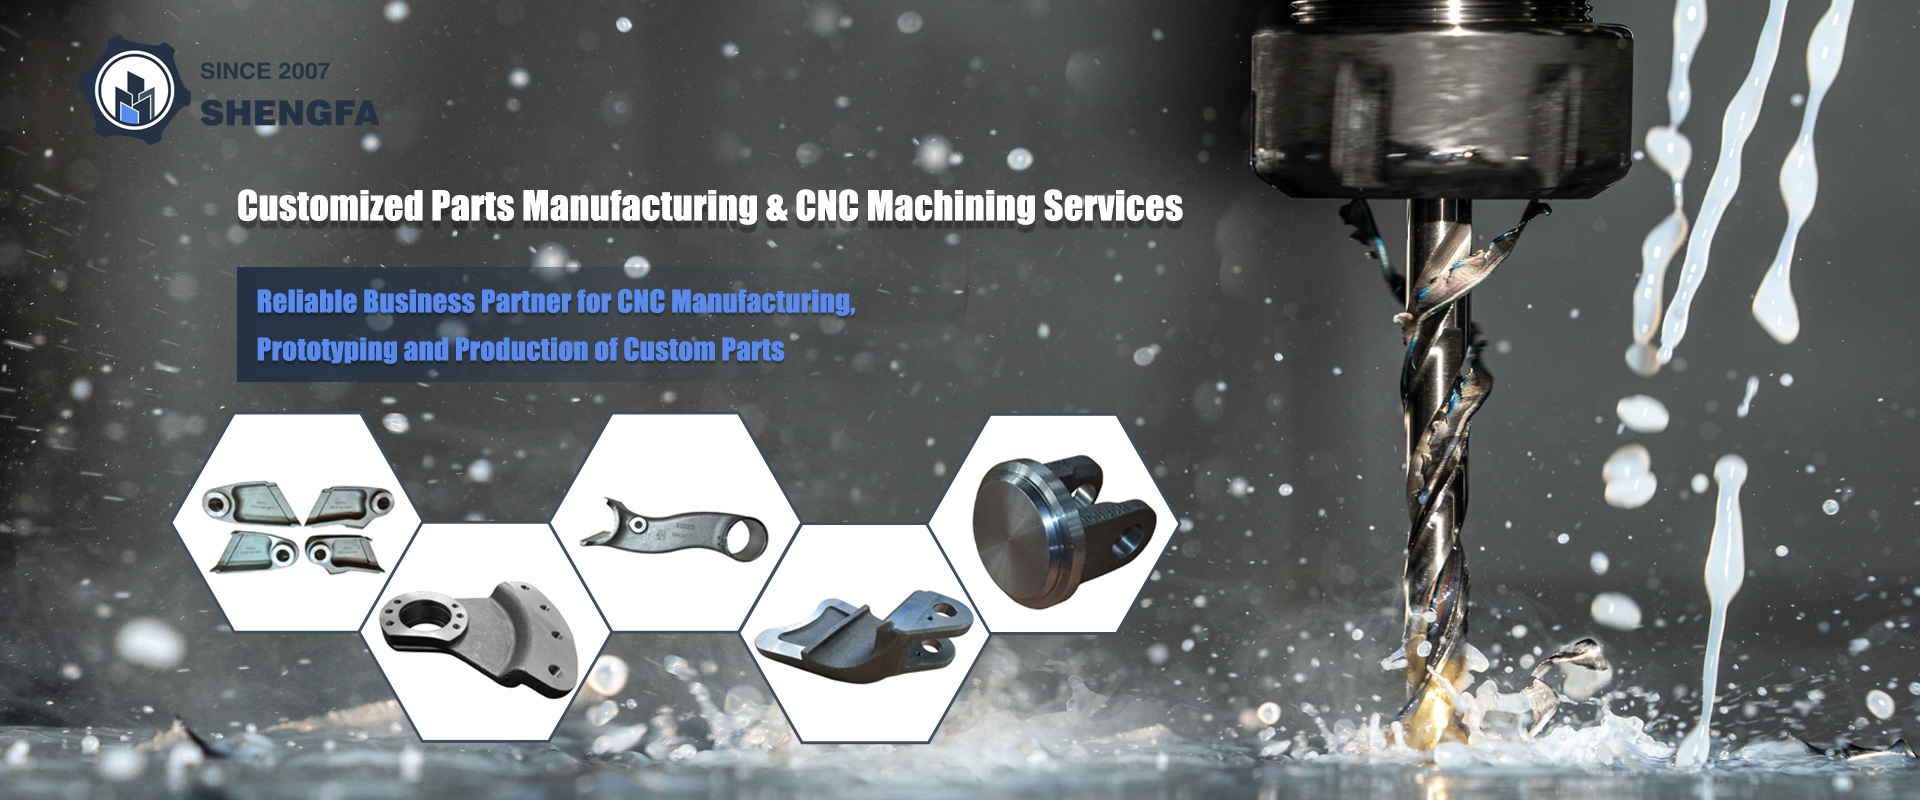 Servicio de mecanizado CNC de China